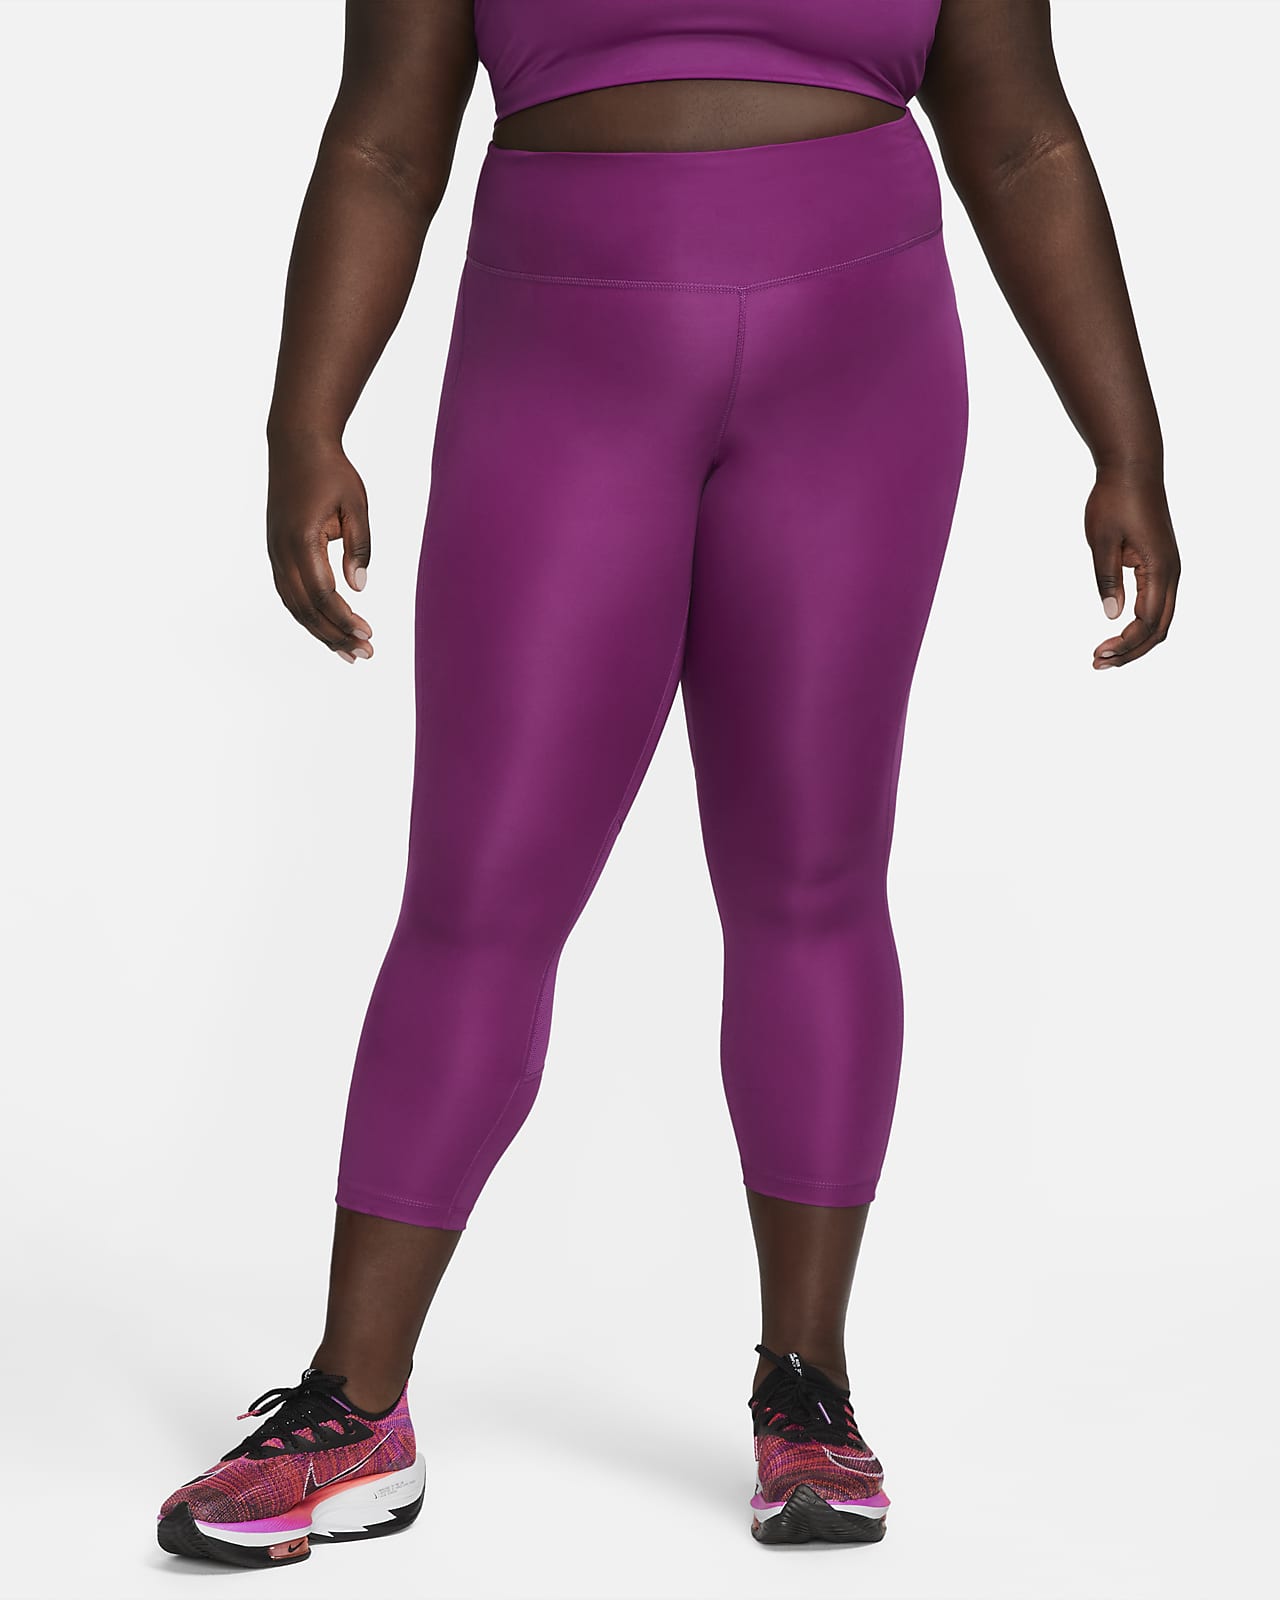 Prosperar cristiandad académico Nike Fast Leggings cortos de running de talle medio (Talla grande) - Mujer.  Nike ES